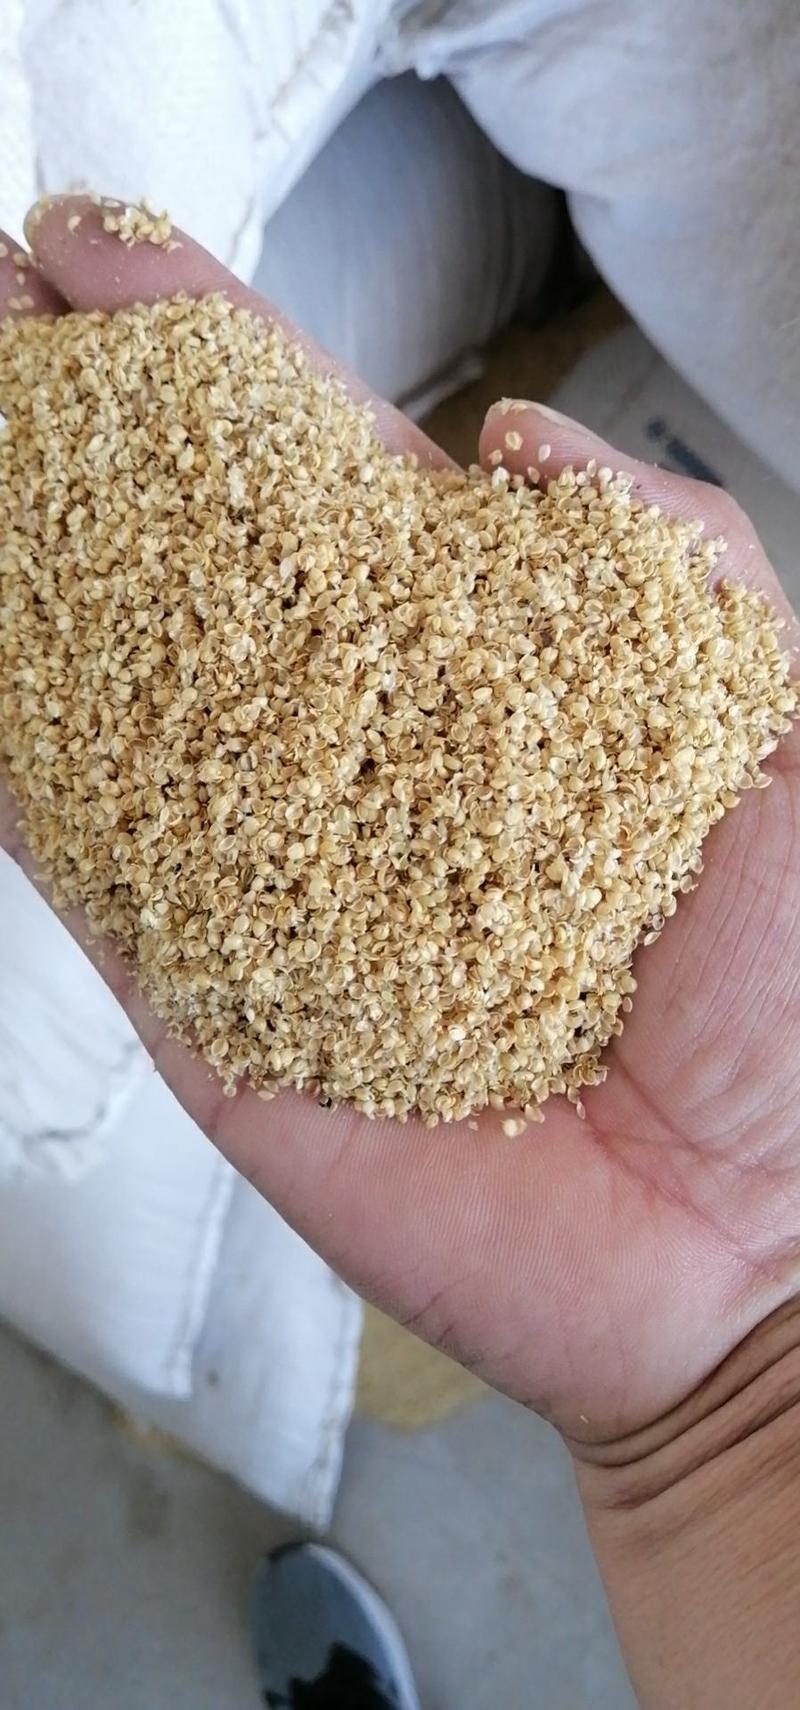 小米壳小米糠填充养殖欢迎选购本公司常年出售